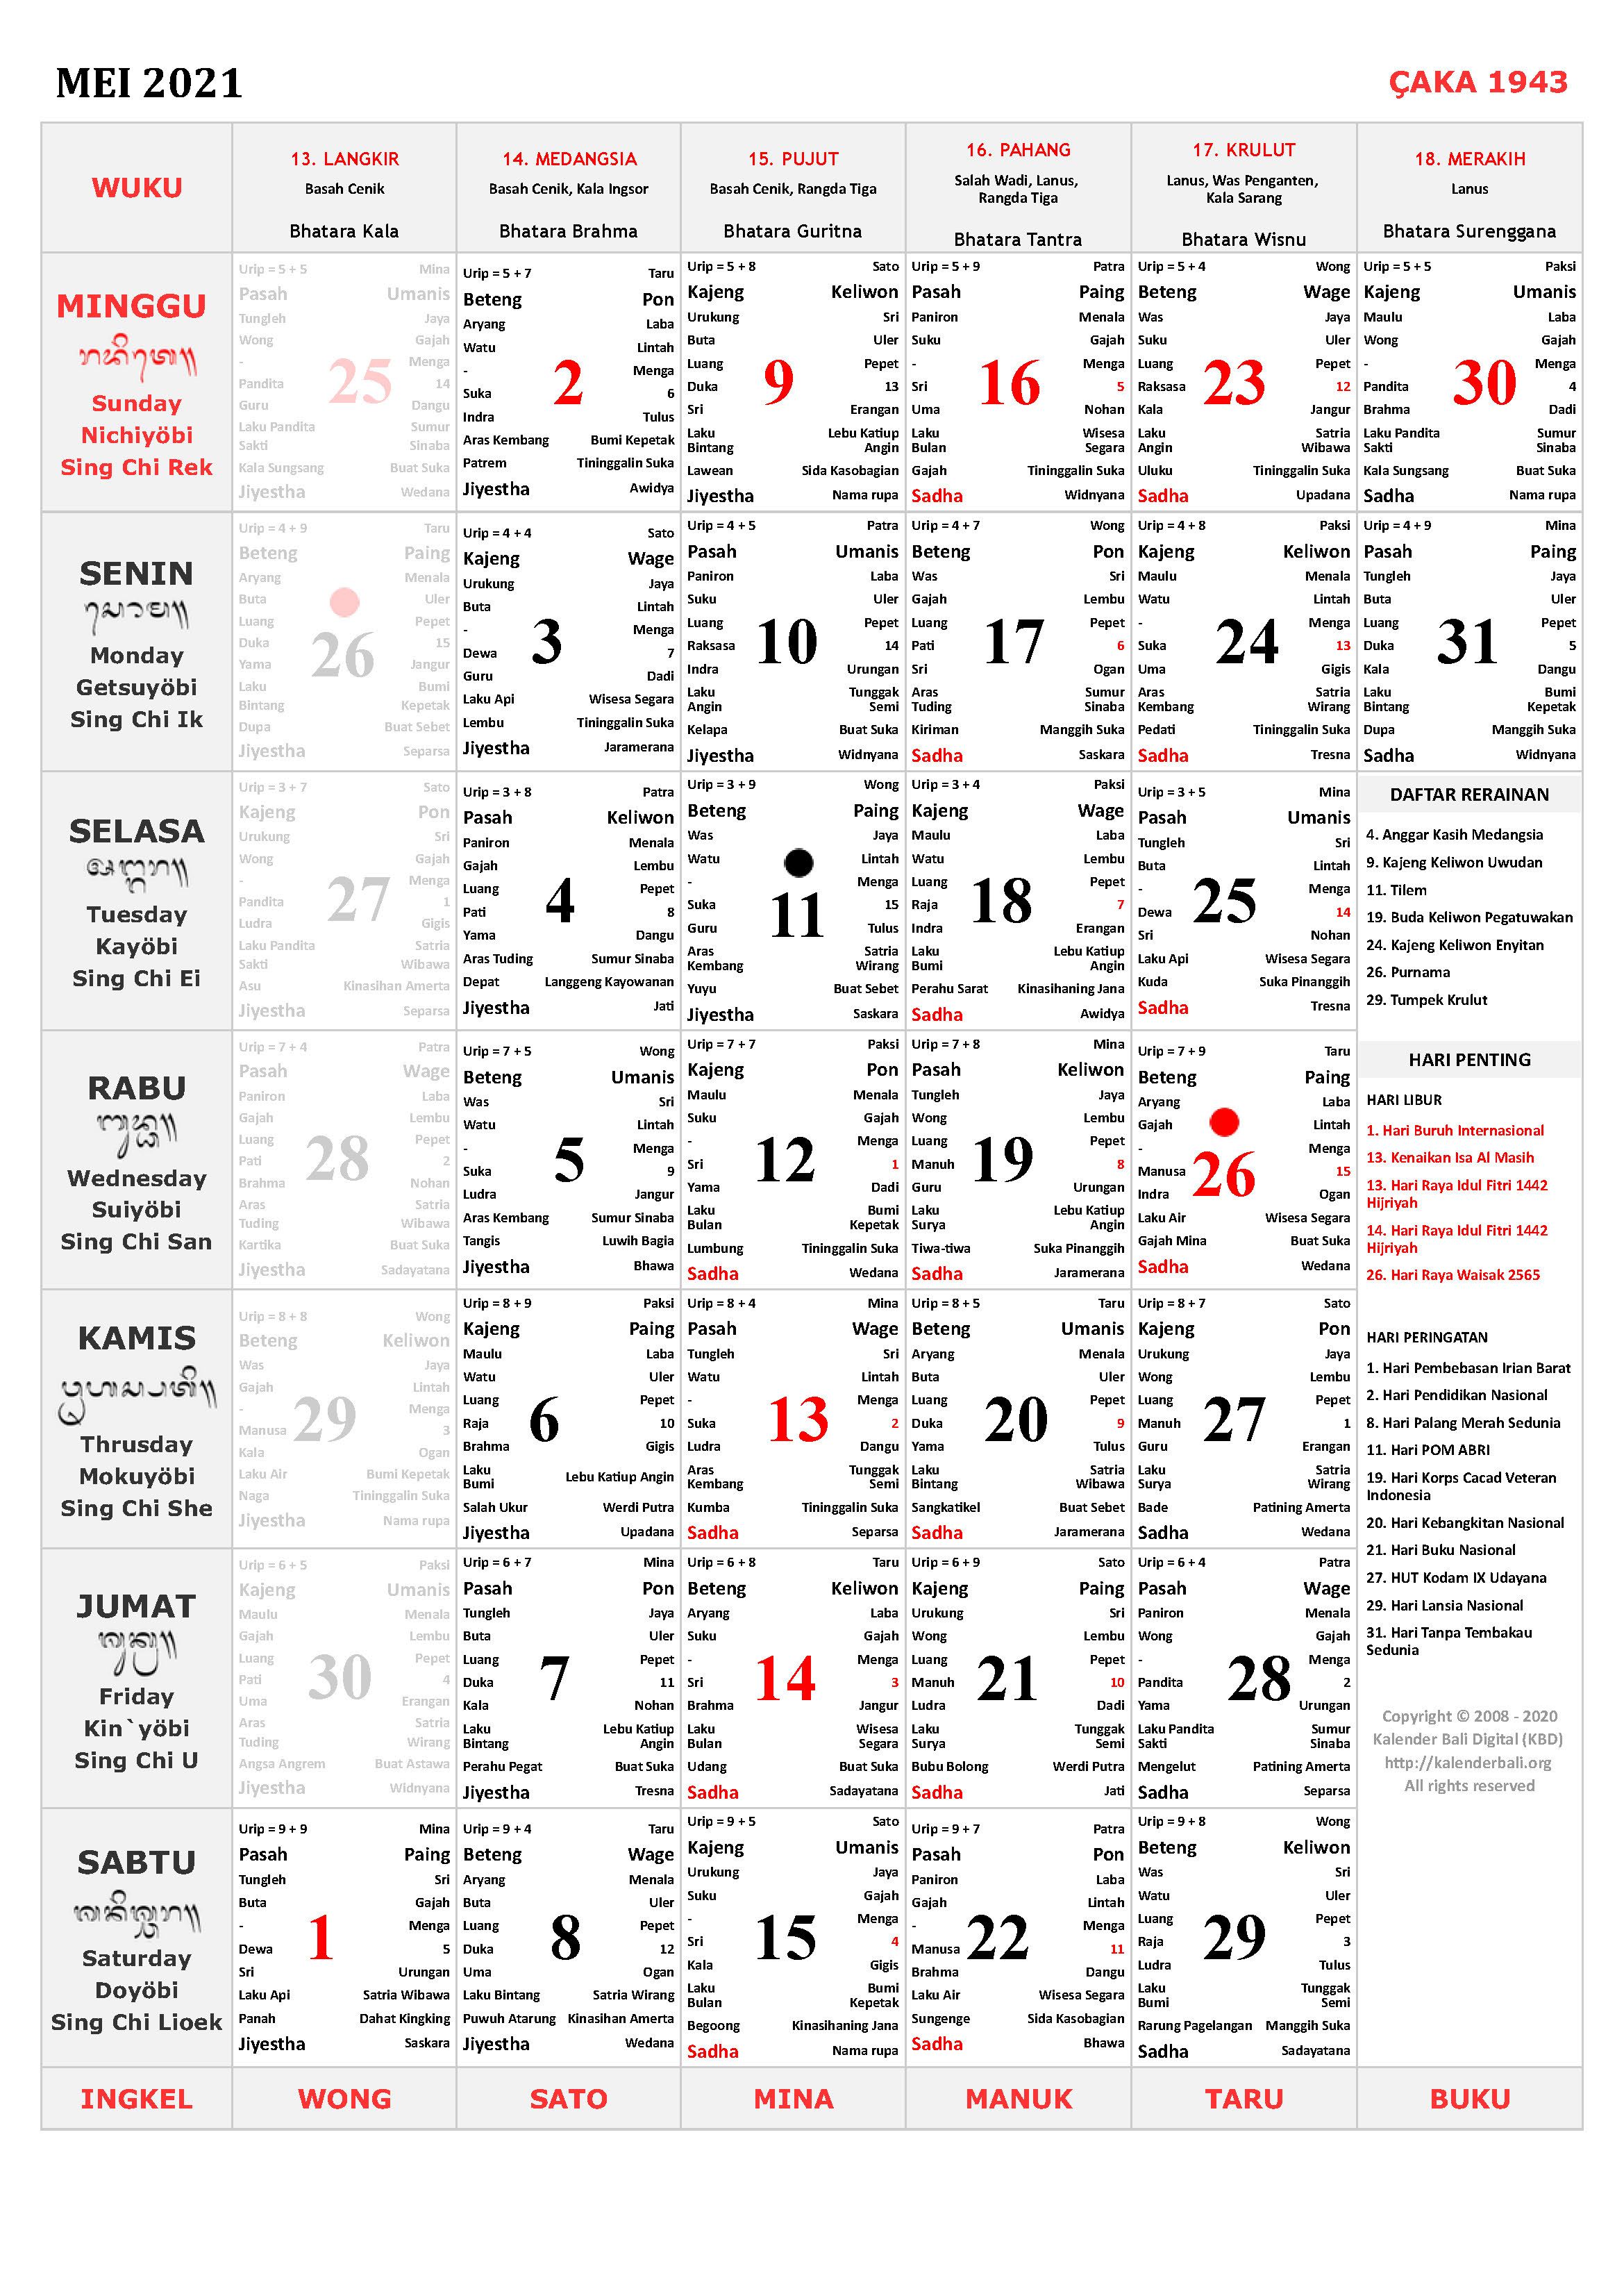 Download Kalender Bali Gratis Mei 2022 Versi JPG, PNG Lengkap dengan Daftar Rerainan